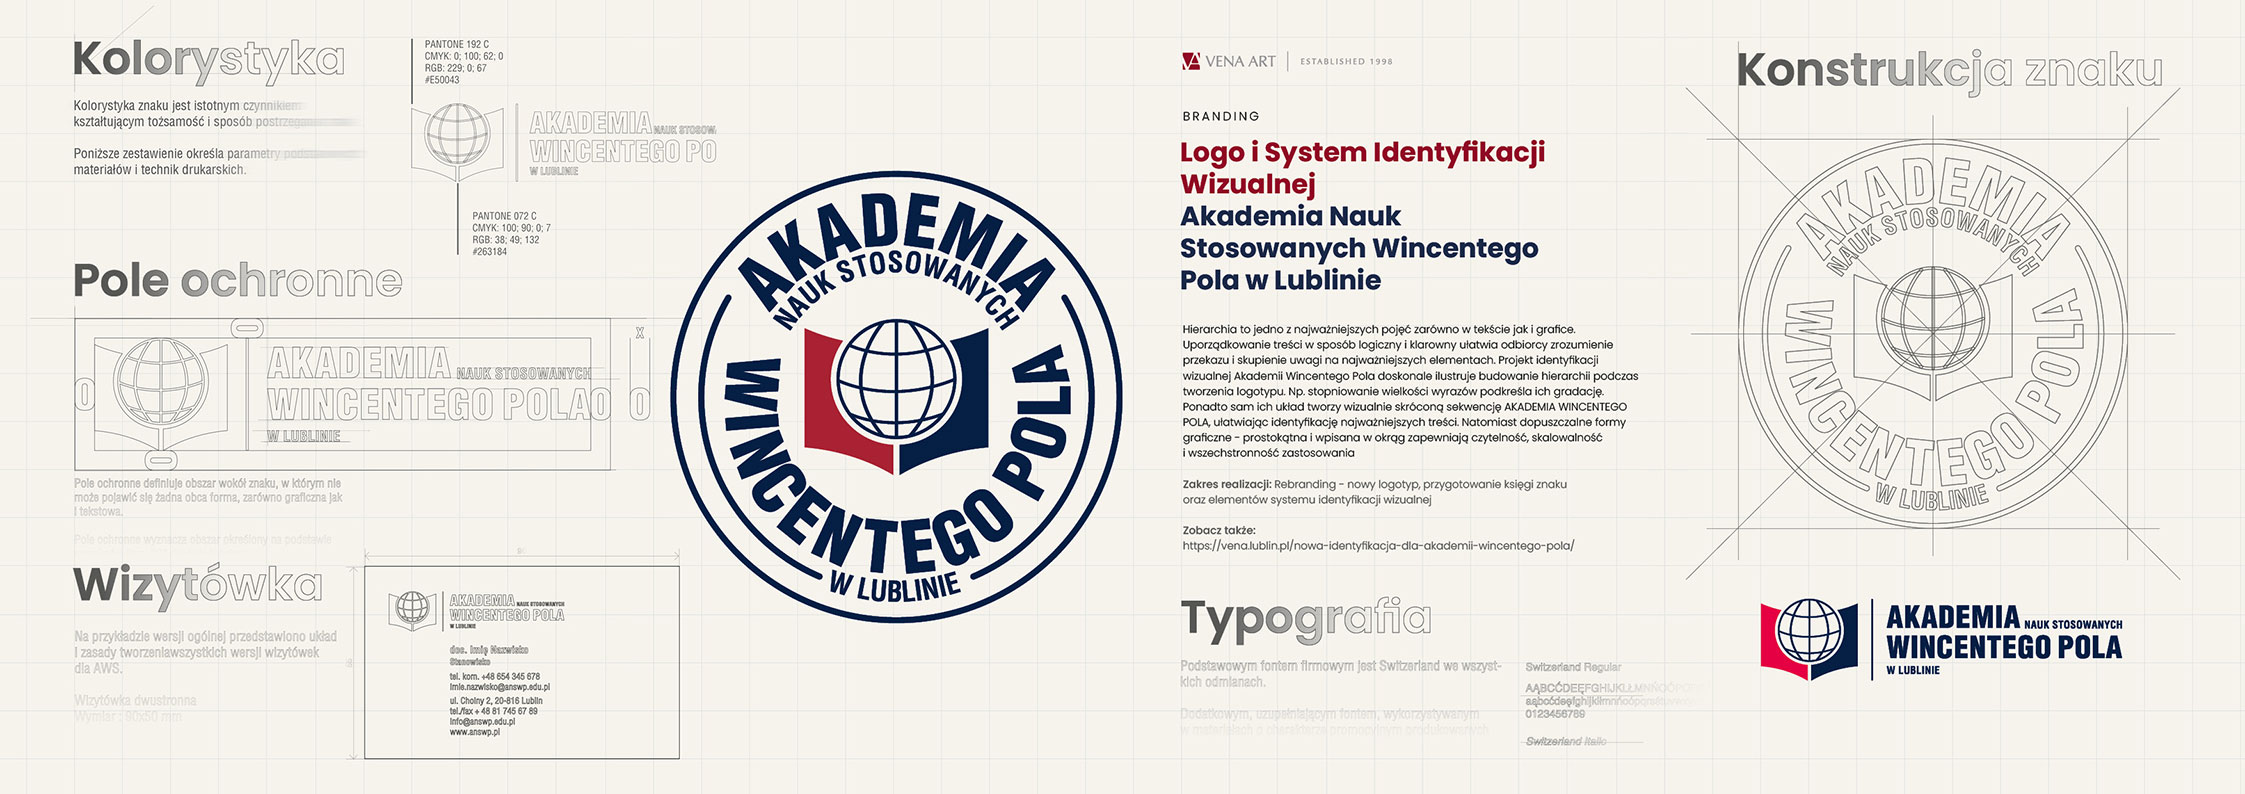 Logo i System Identyfikacji Wizualnej — Akademia Nauk Stosowanych Wincentego Pola w Lublinie